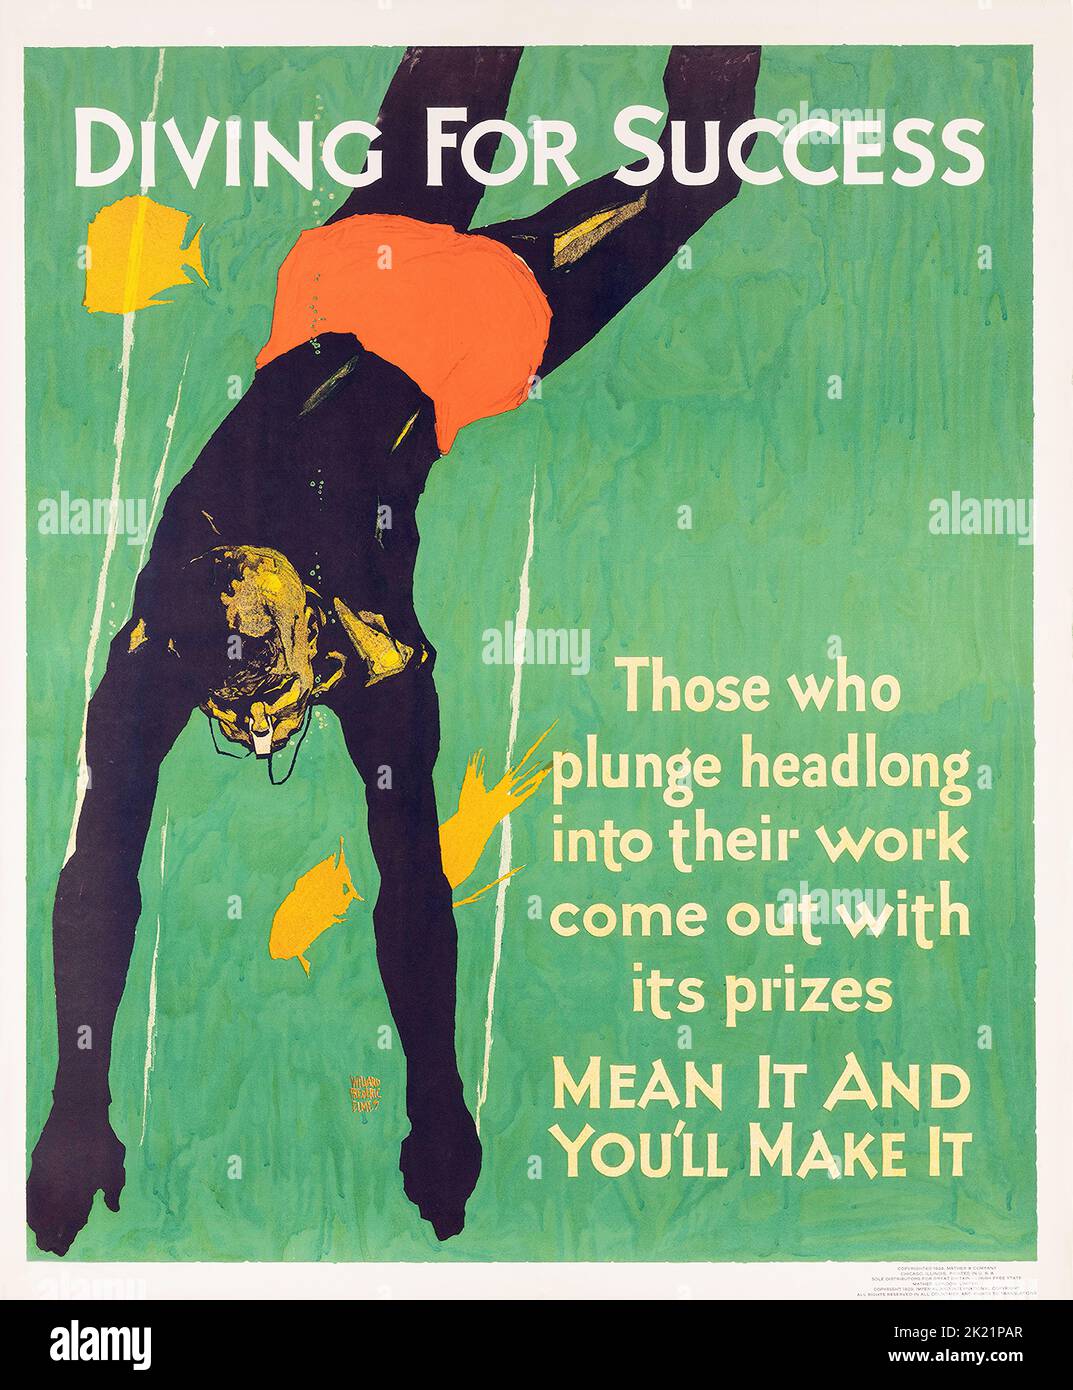 Willard Frederic Elmes Diving for Success affiche de motivation Banque D'Images